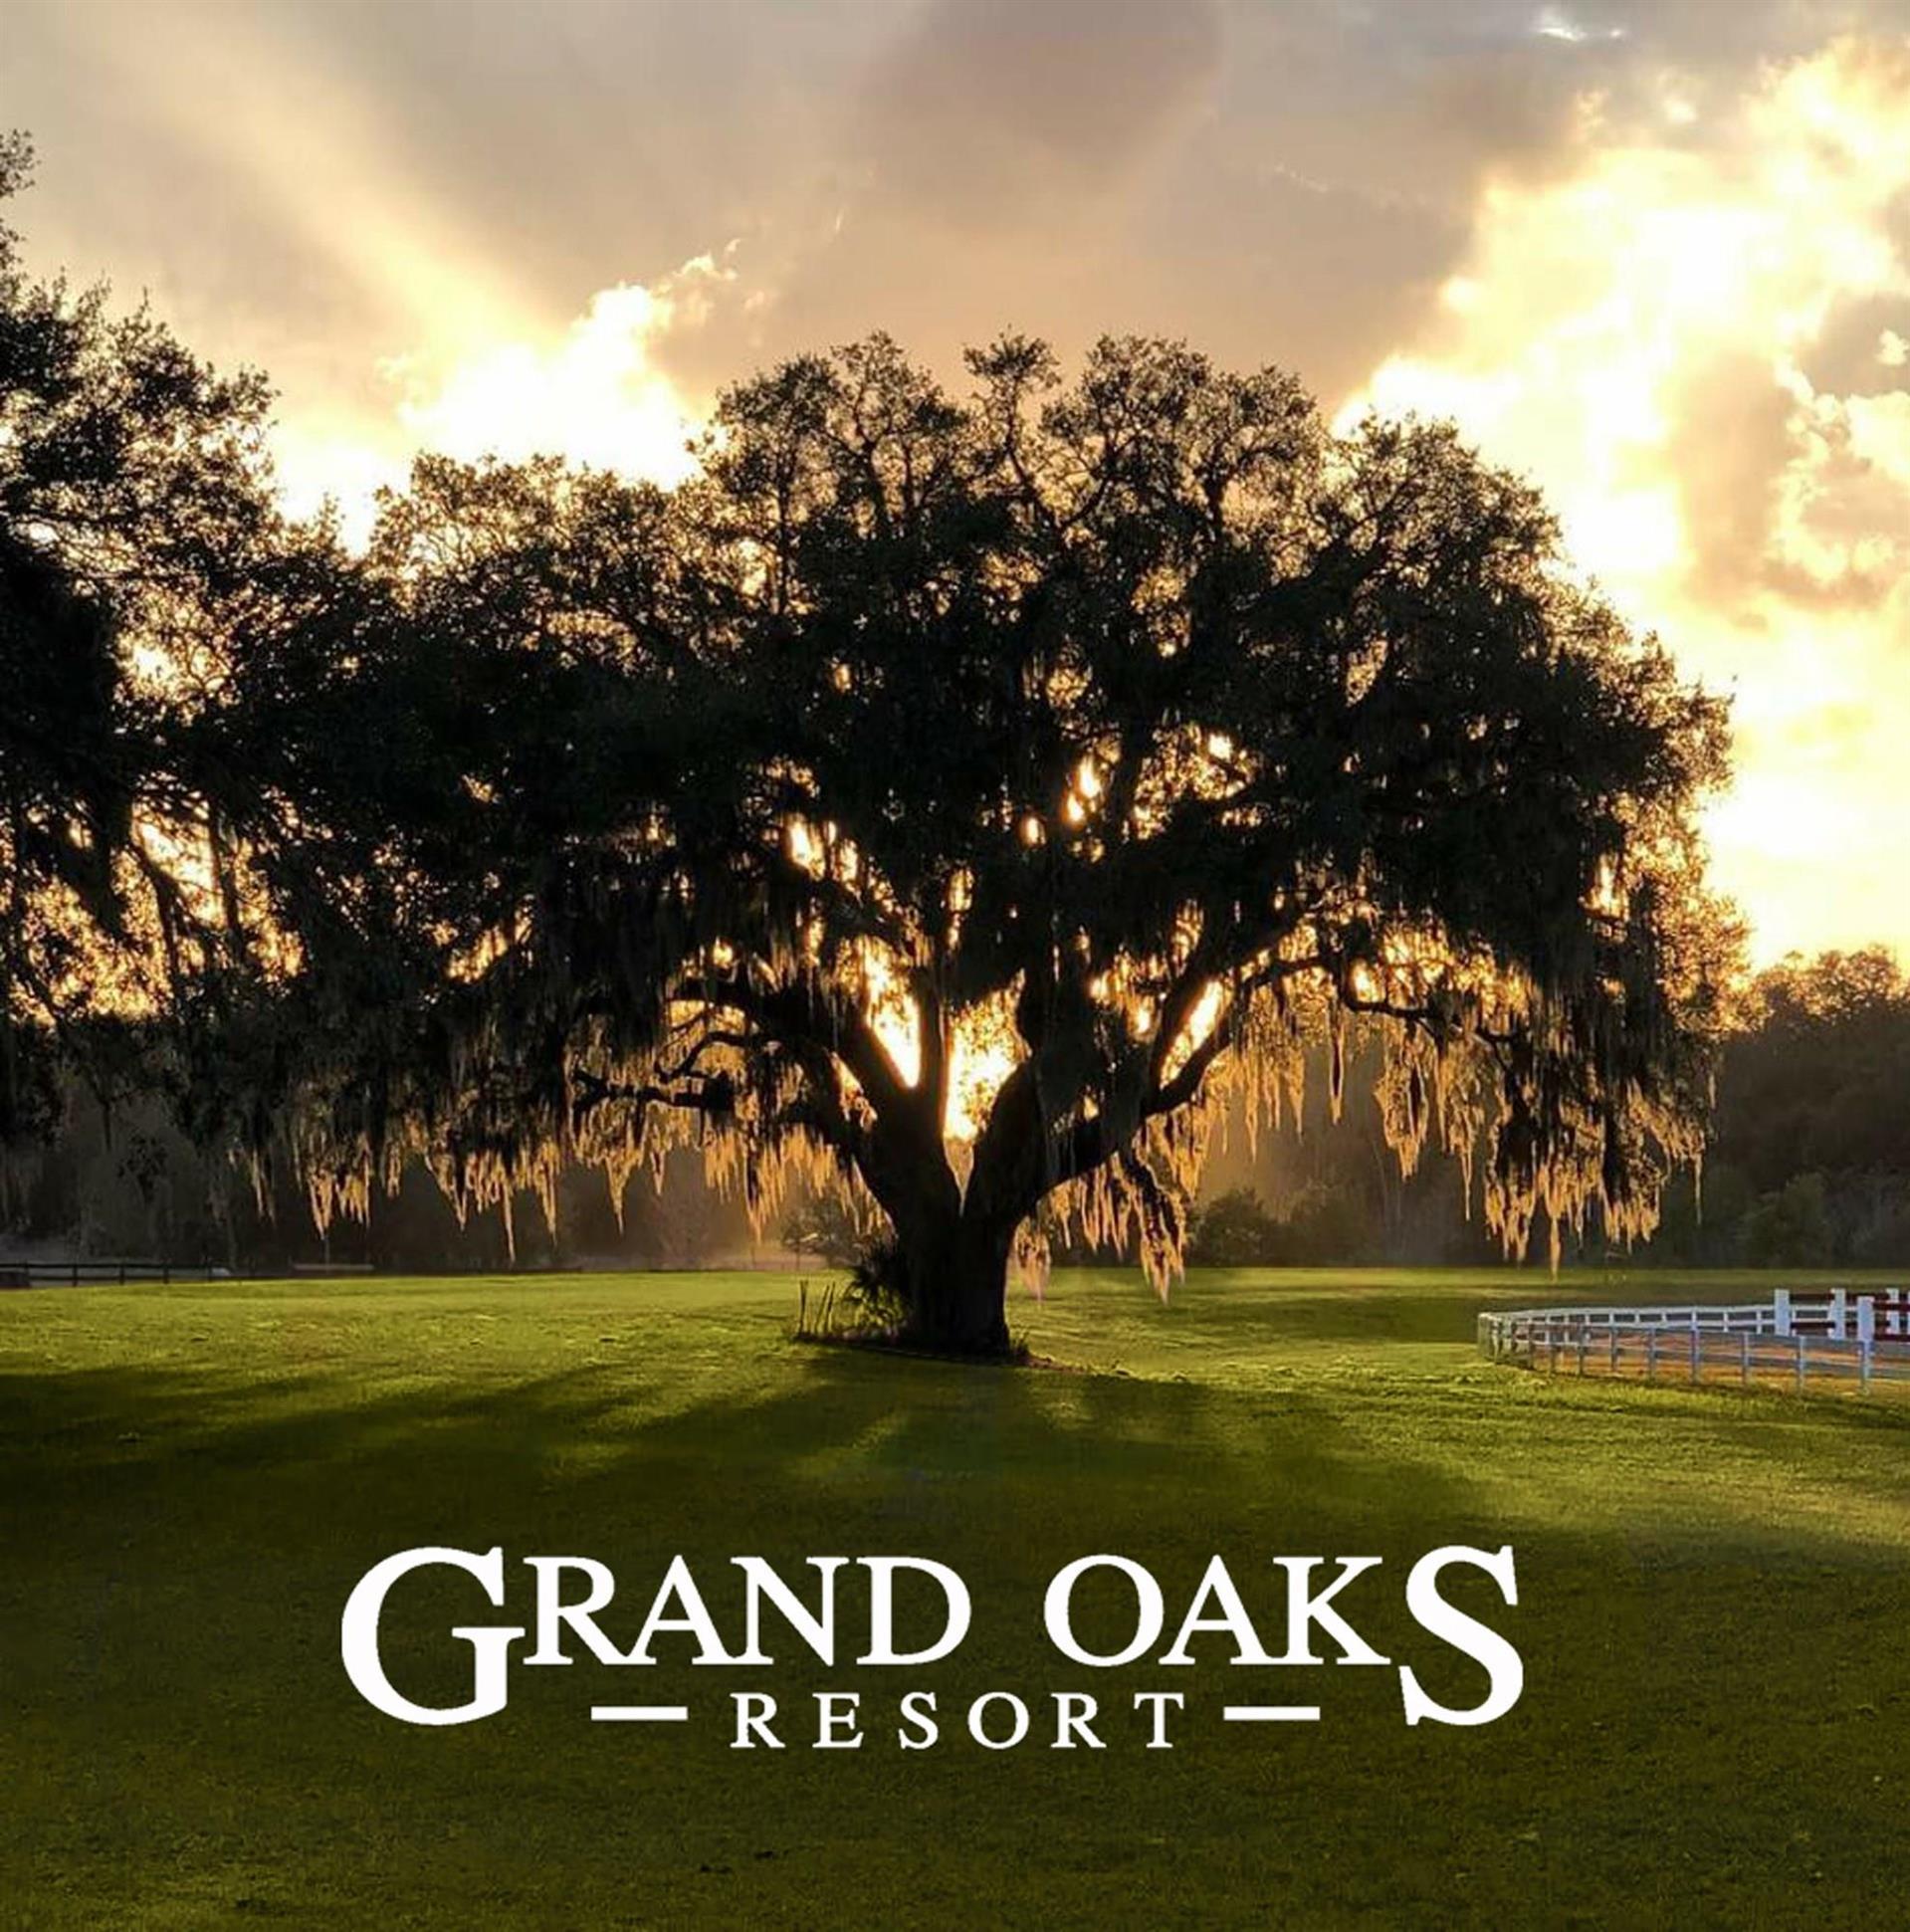 Grand Oaks Resort in Weirsdale, FL